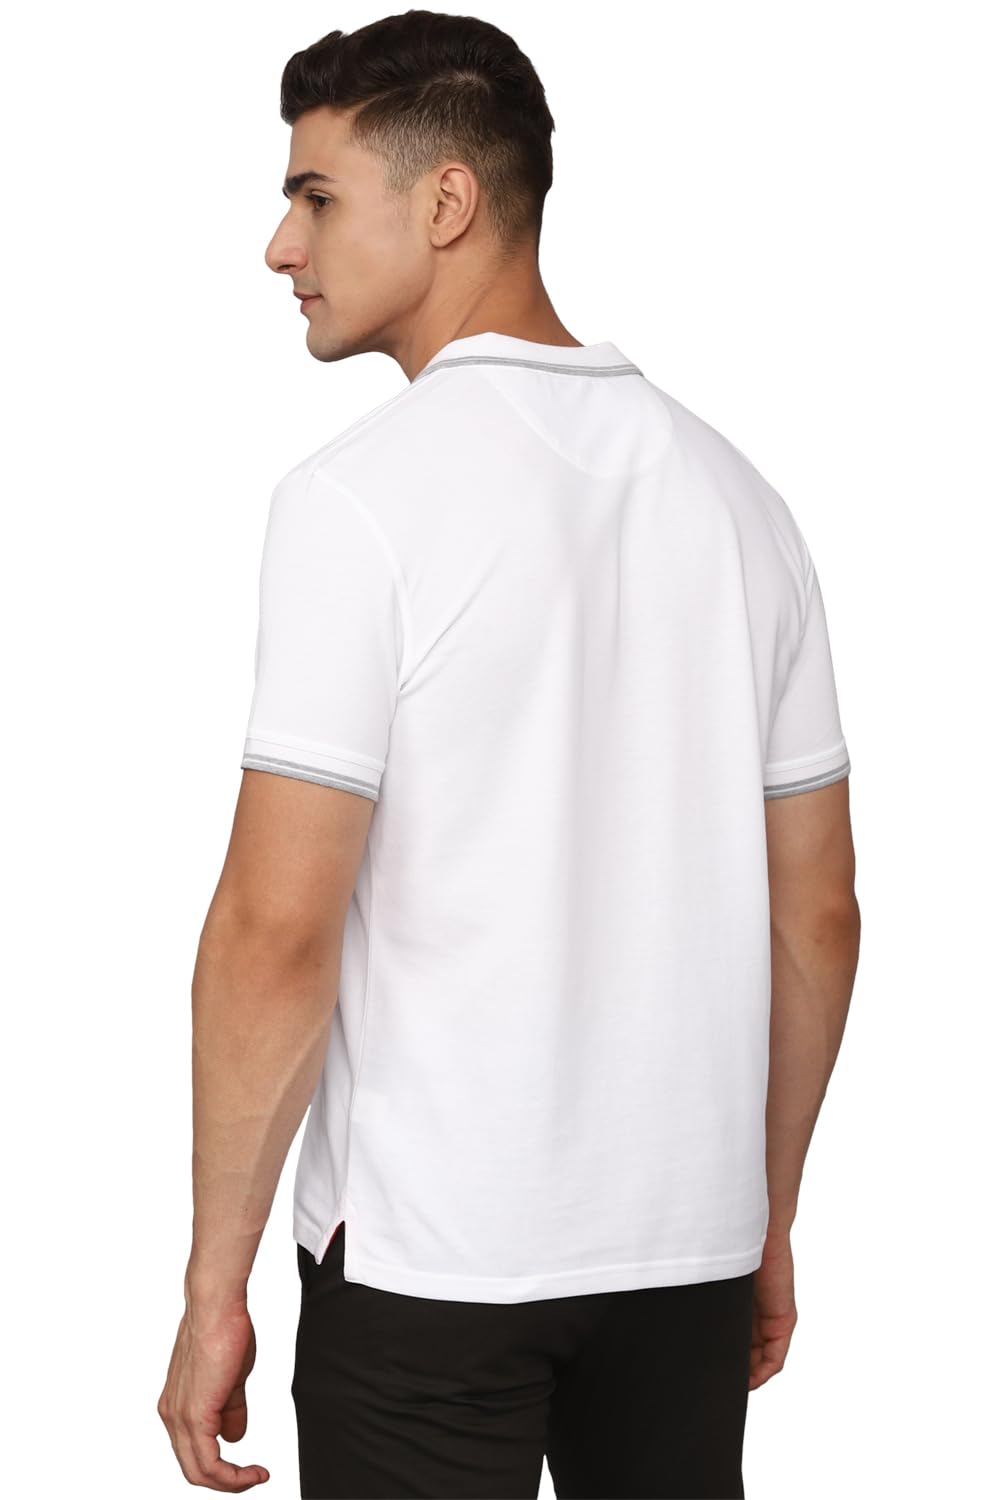 Allen Solly Men's Solid Regular Fit T-Shirt (ASKPNRGFS50508_White